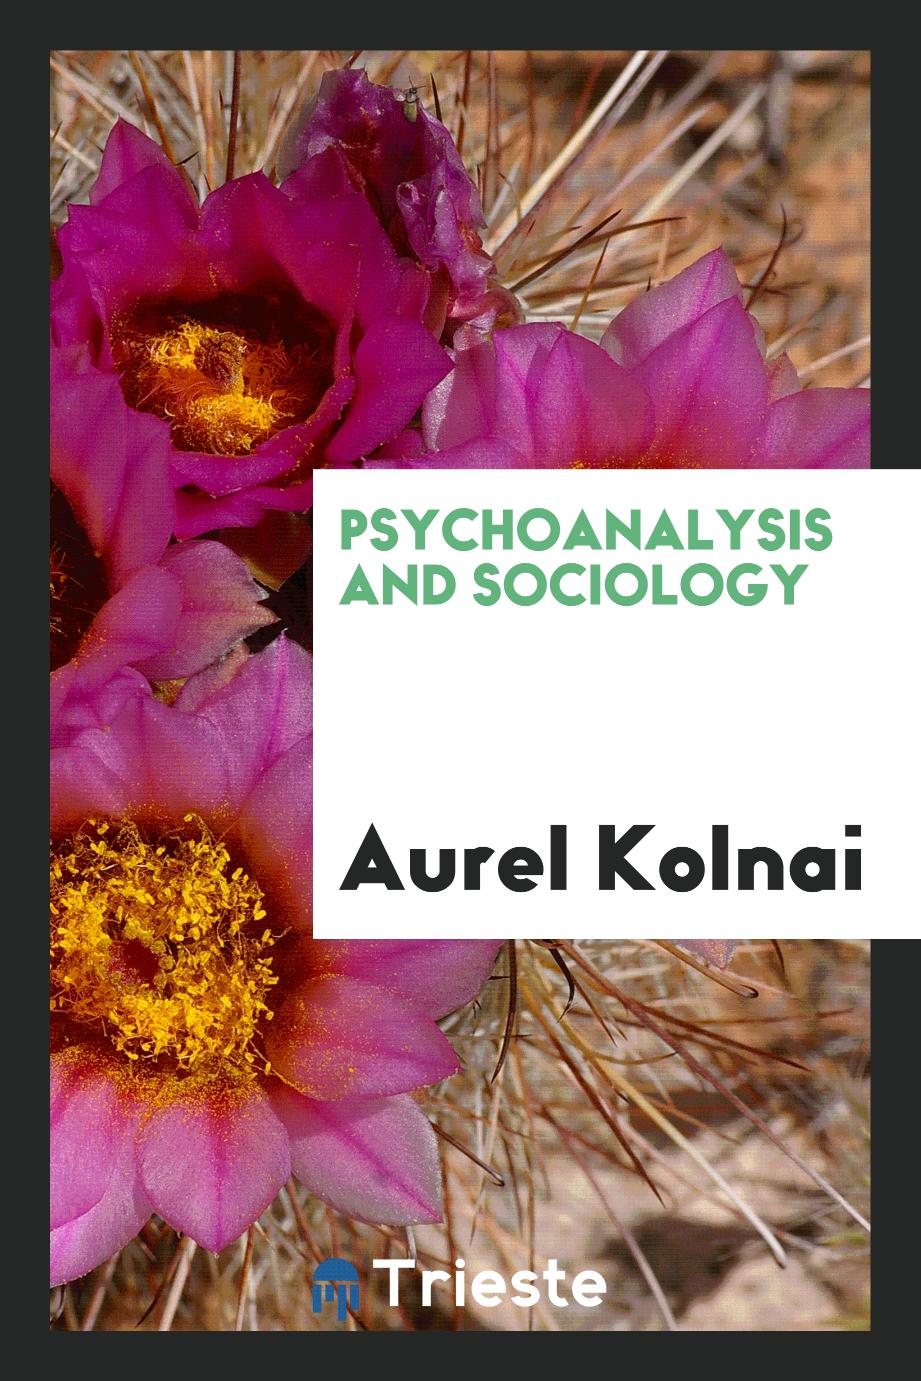 Psychoanalysis and sociology